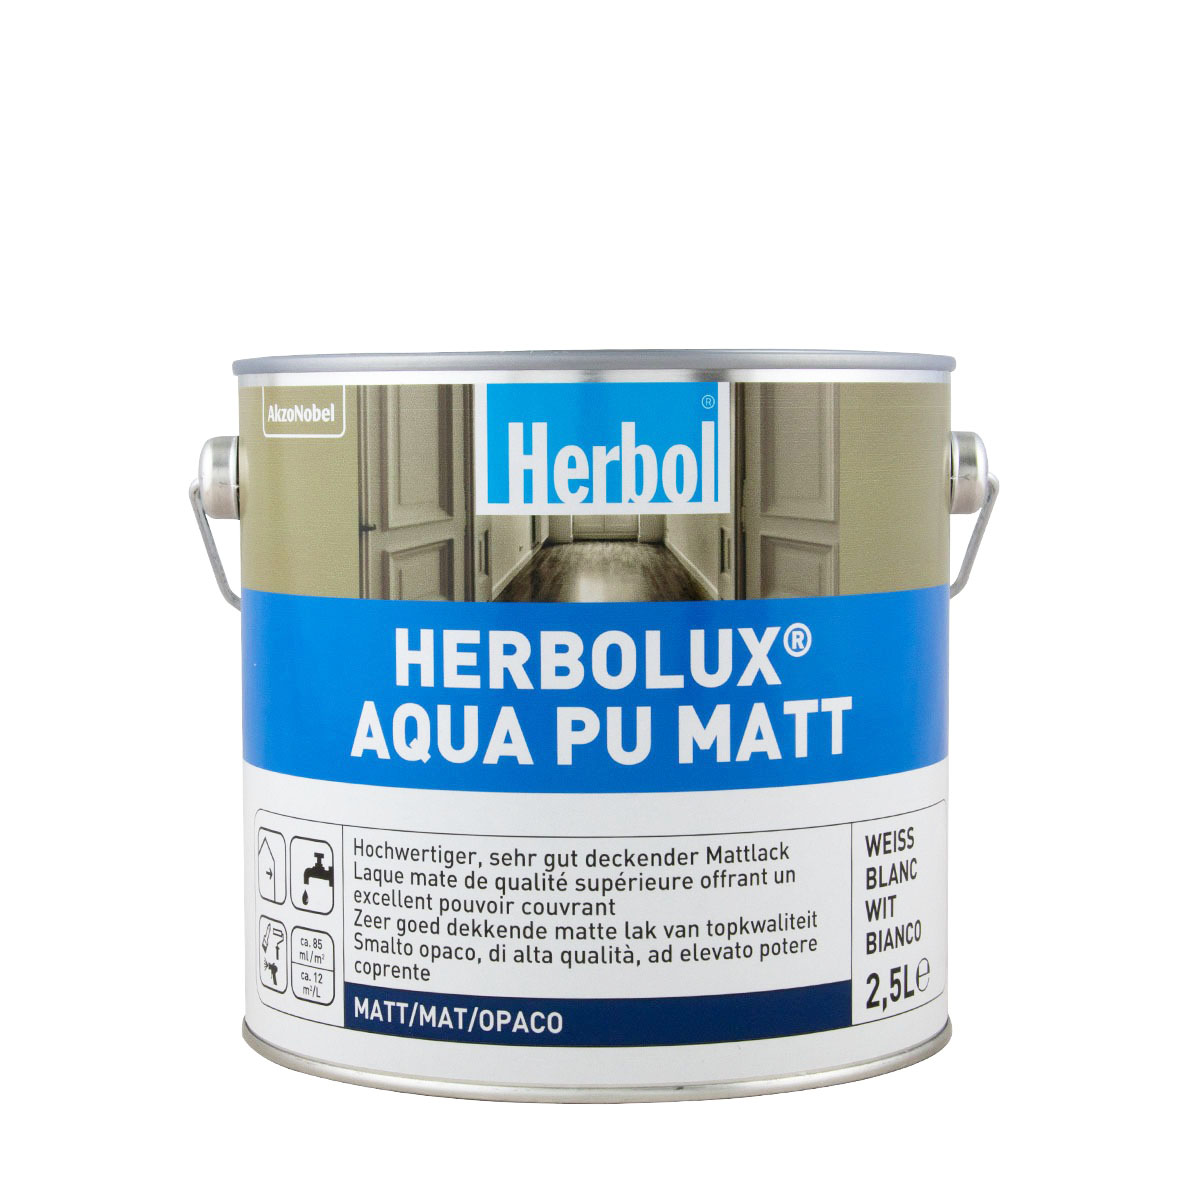 Herbol Herbolux Aqua Pu Matt 2,5L weiss, Mattlack